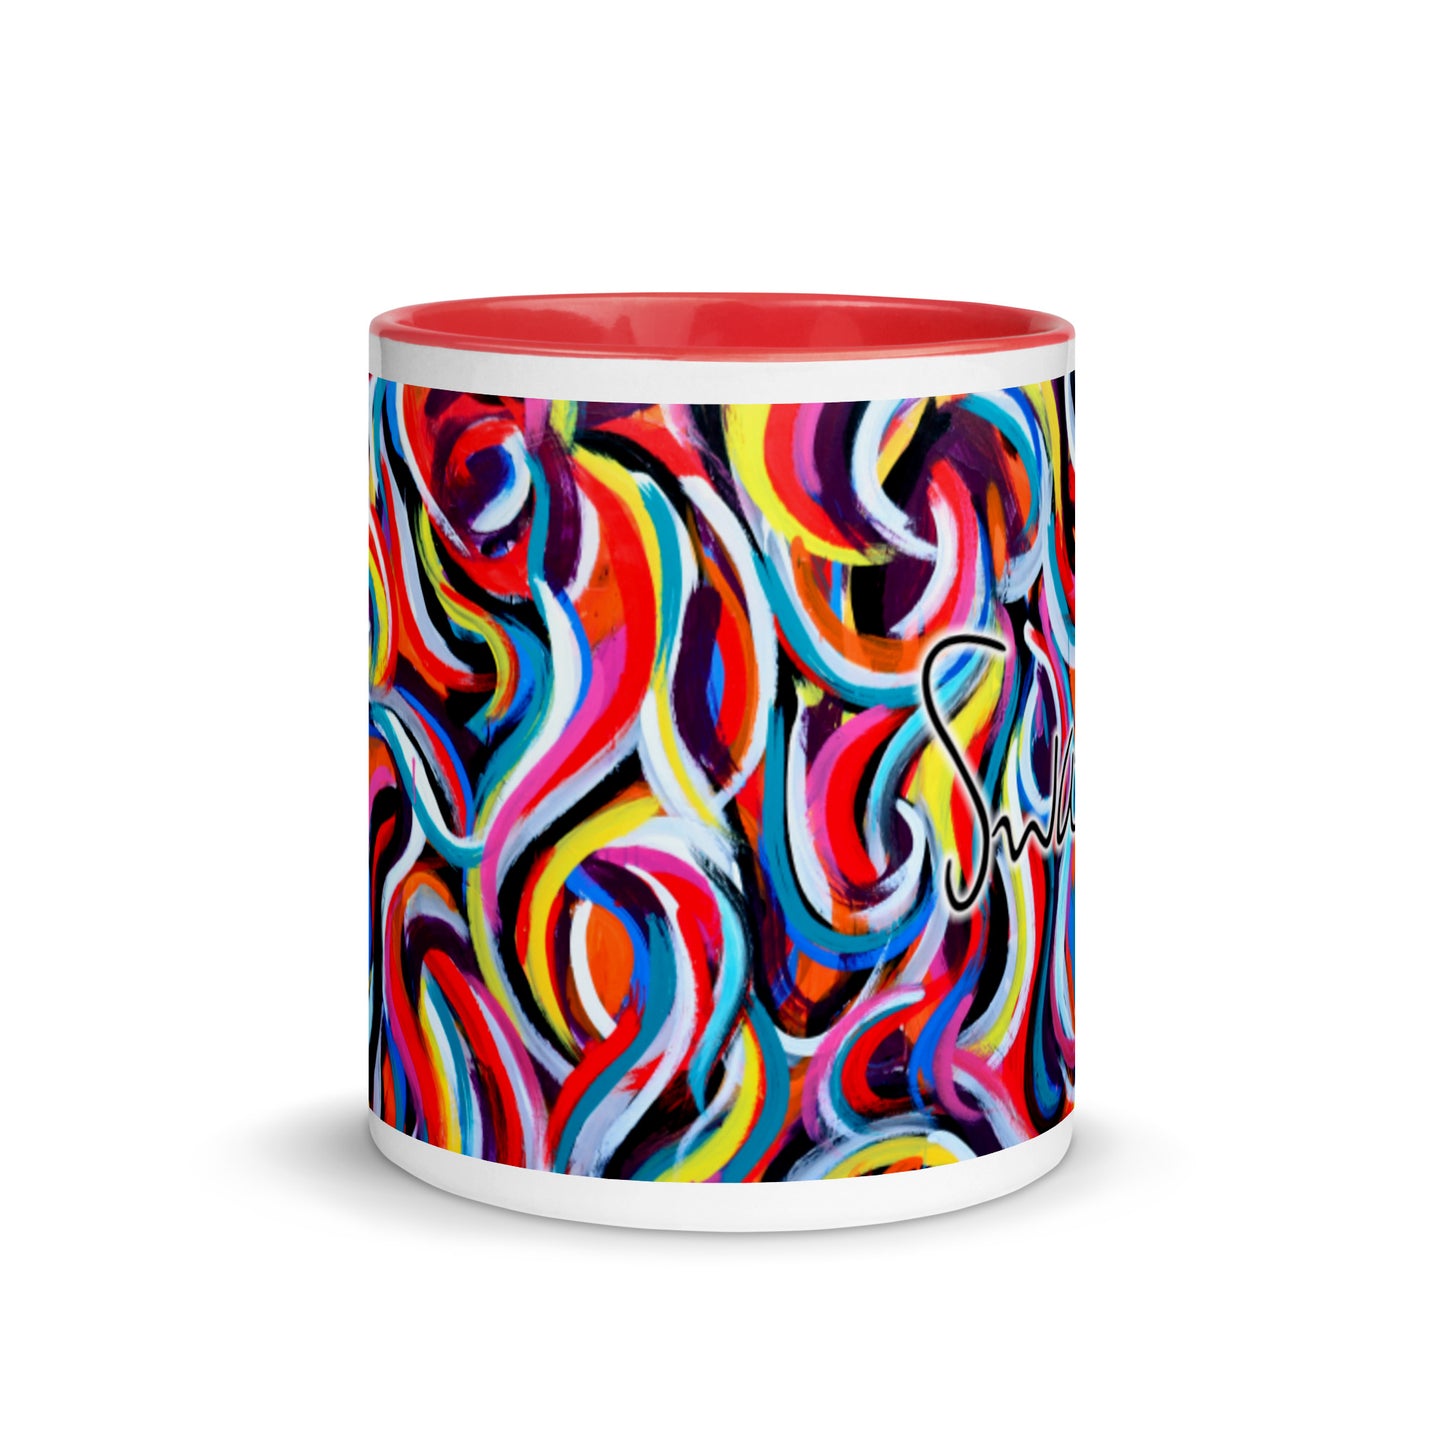 Tasse mit farbiger Innenseite – mehrfarbiges Wirbeldesign